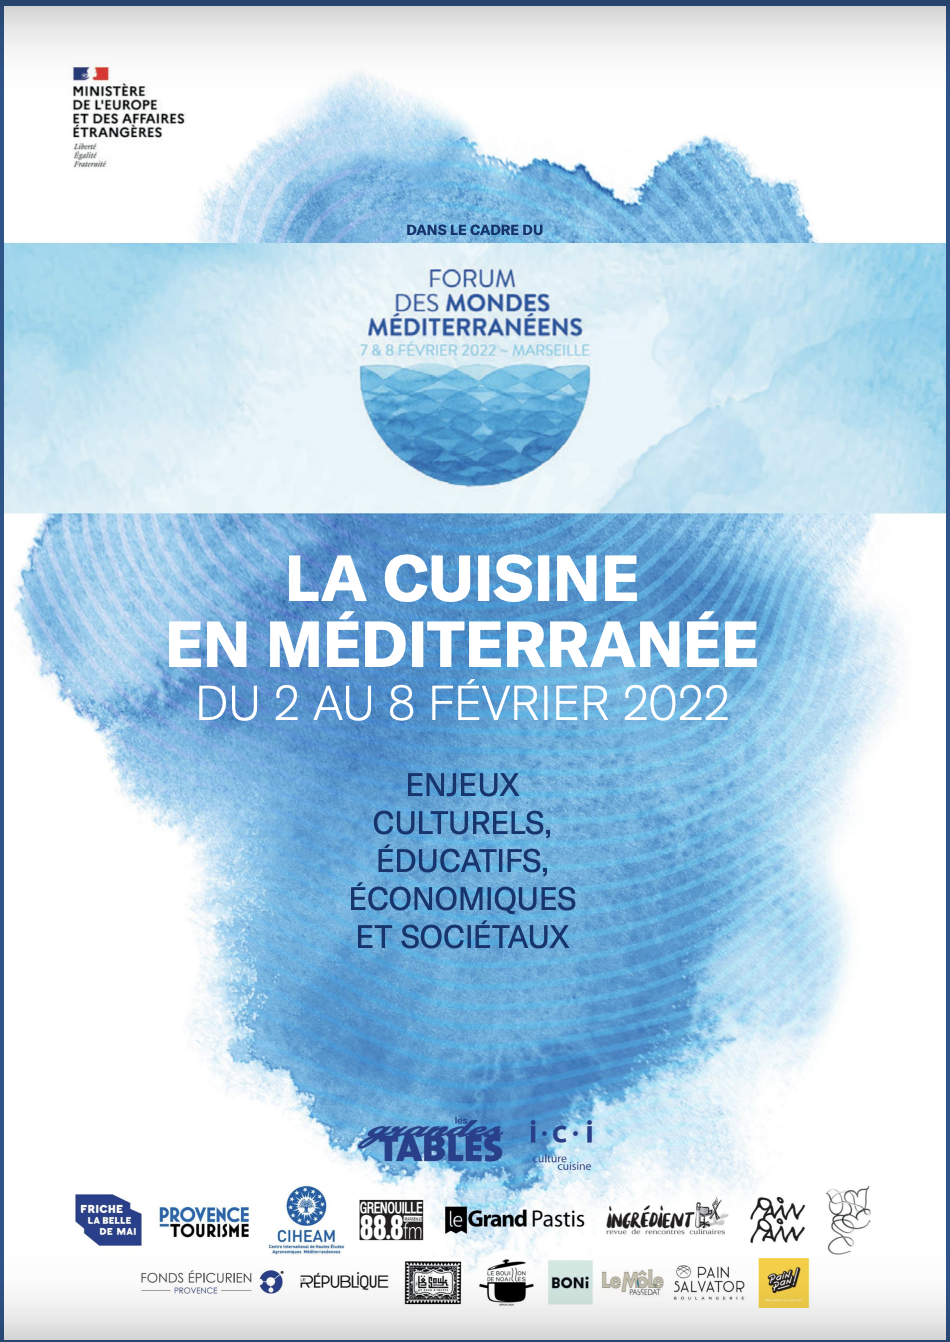 The CIHEAM present at the Mediterranean Worlds Forum